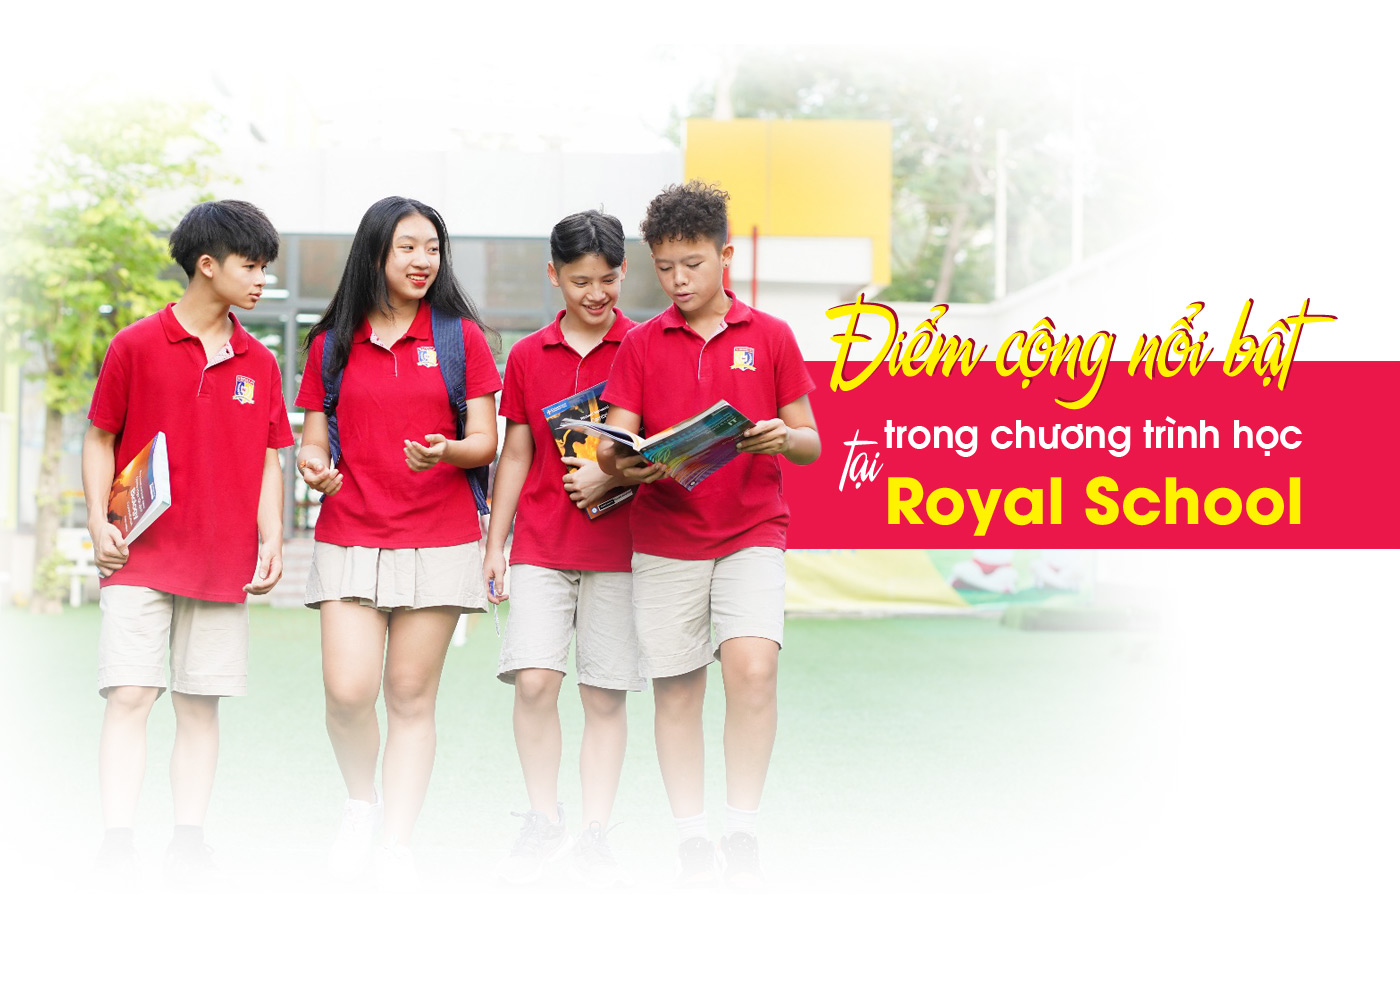 Điểm cộng nổi bật trong chương trình học tại Royal School - Ảnh 1